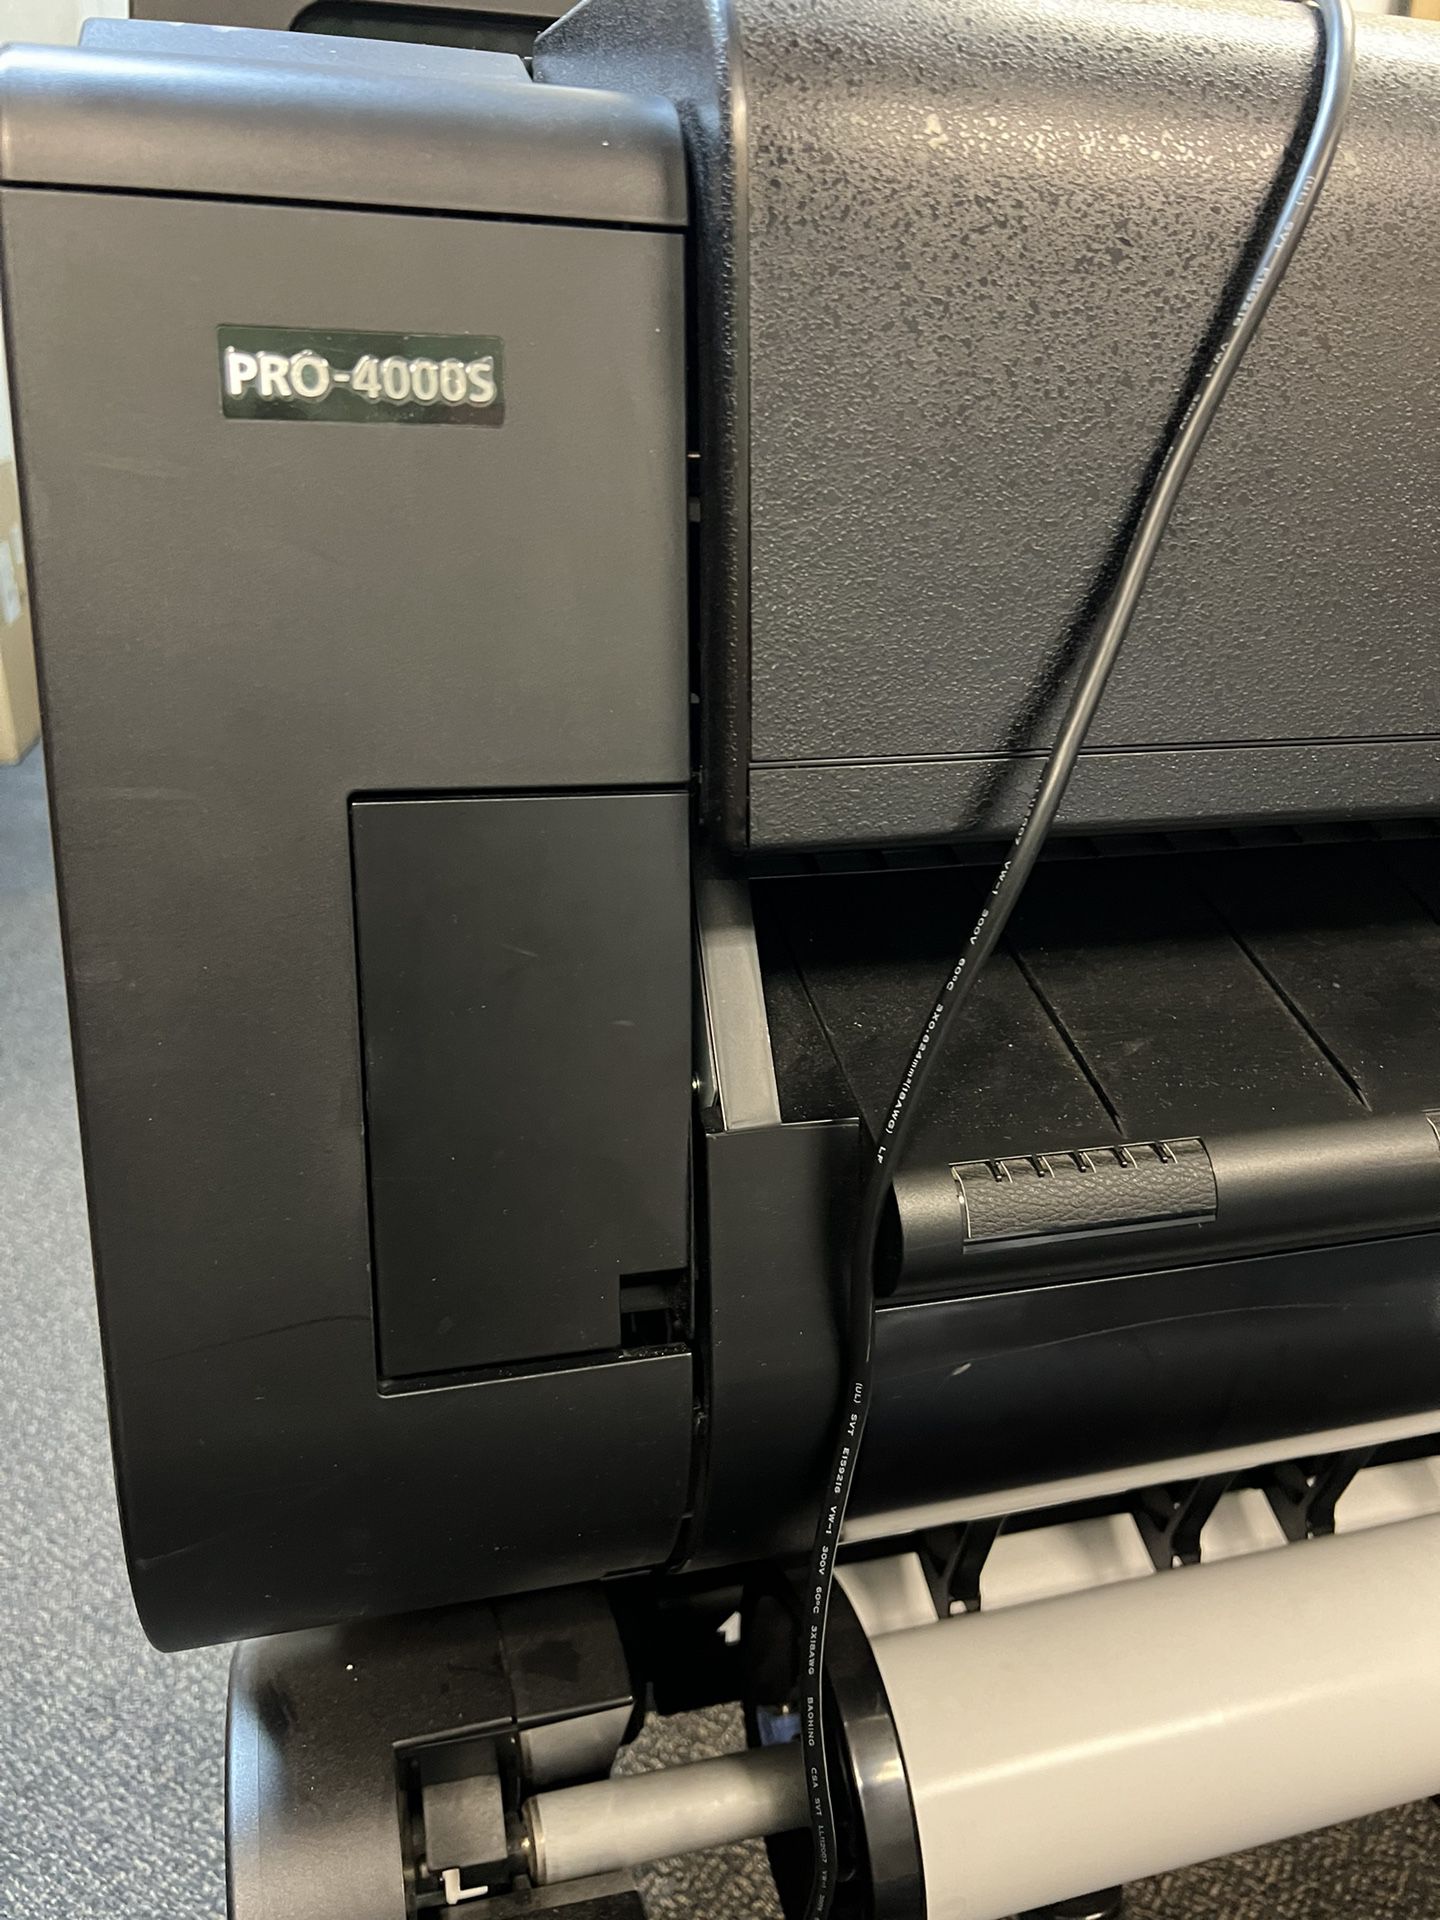 Canon PRO-4000s Wide Format Printer